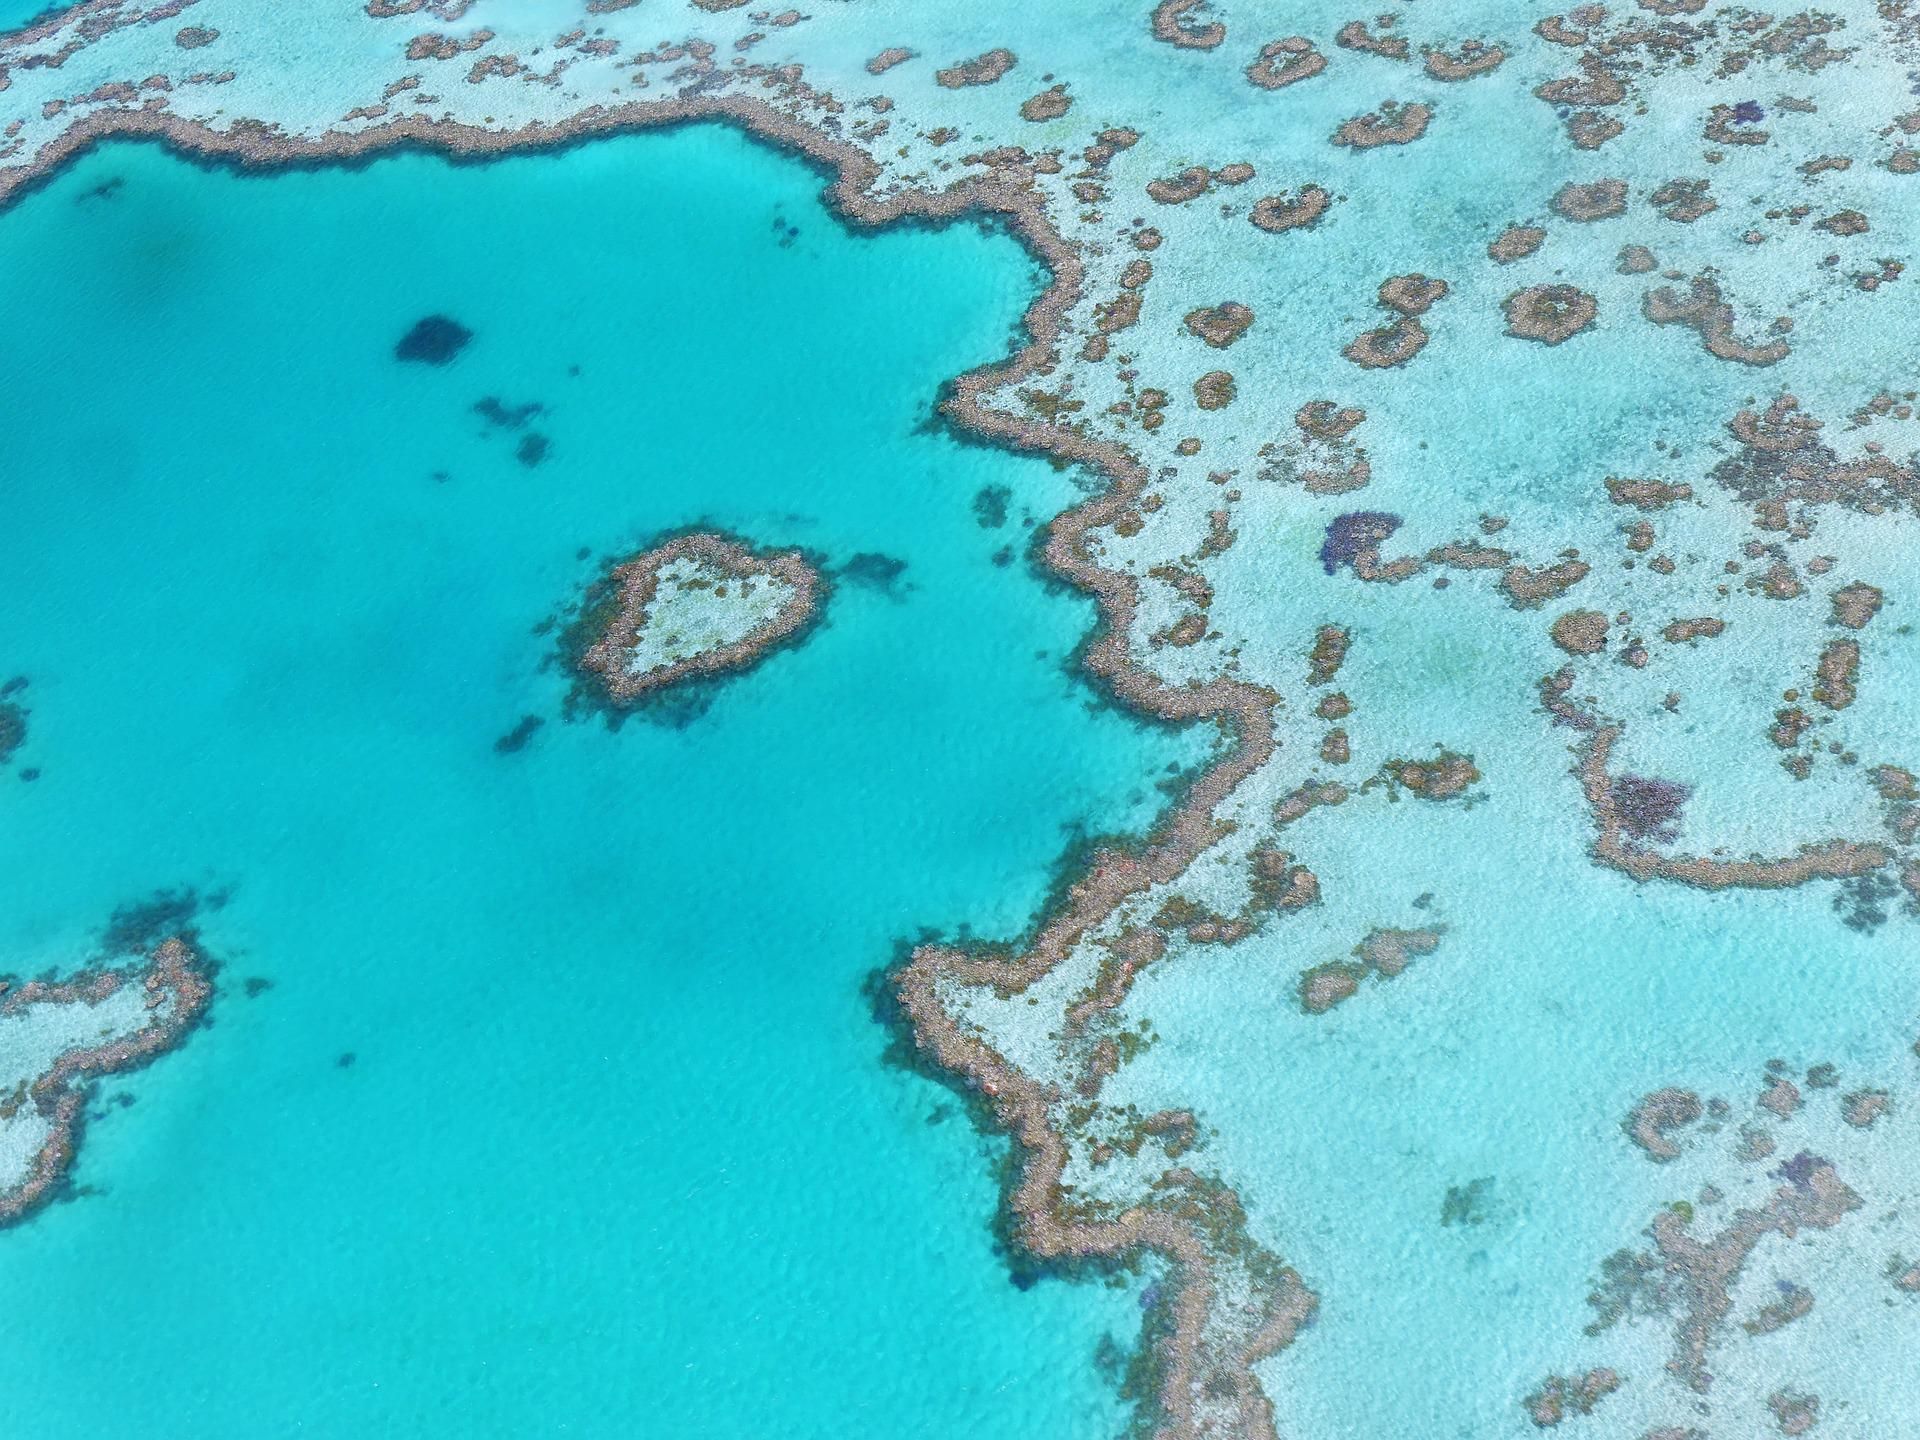 Hitzewelle lässt Great Barrier Reef weiter ausbleichen